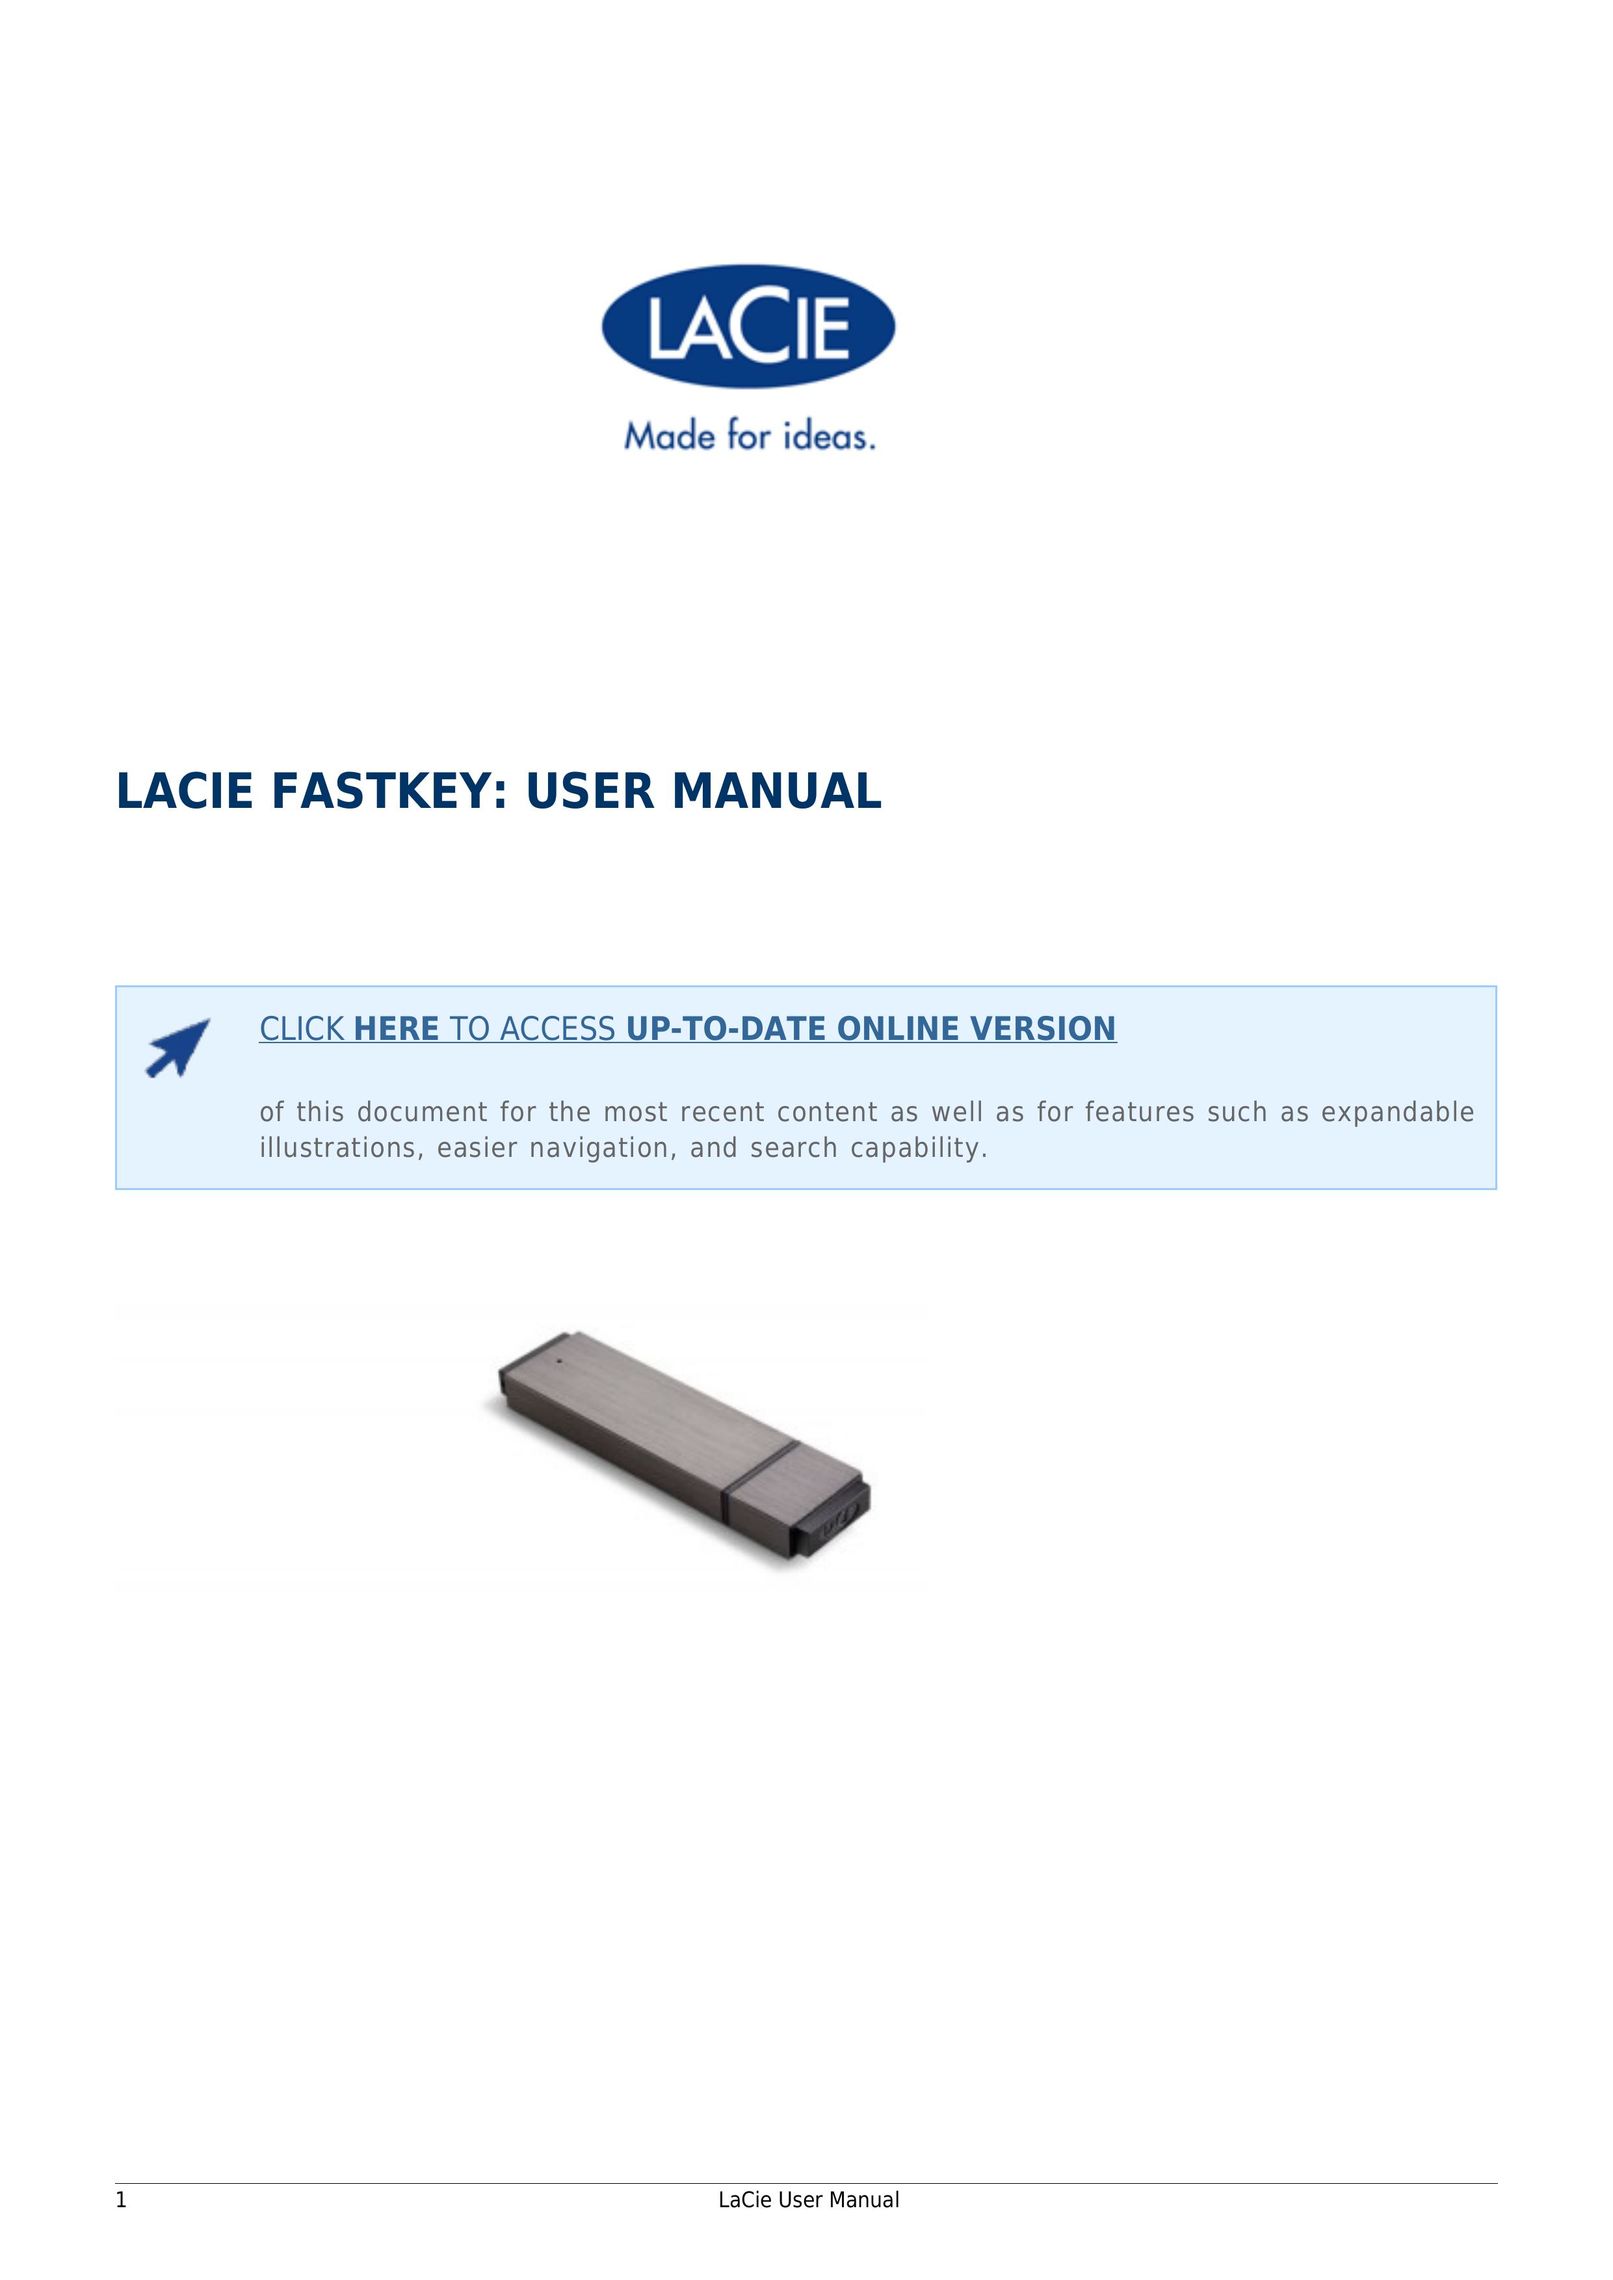 LaCie 14F Computer Accessories User Manual